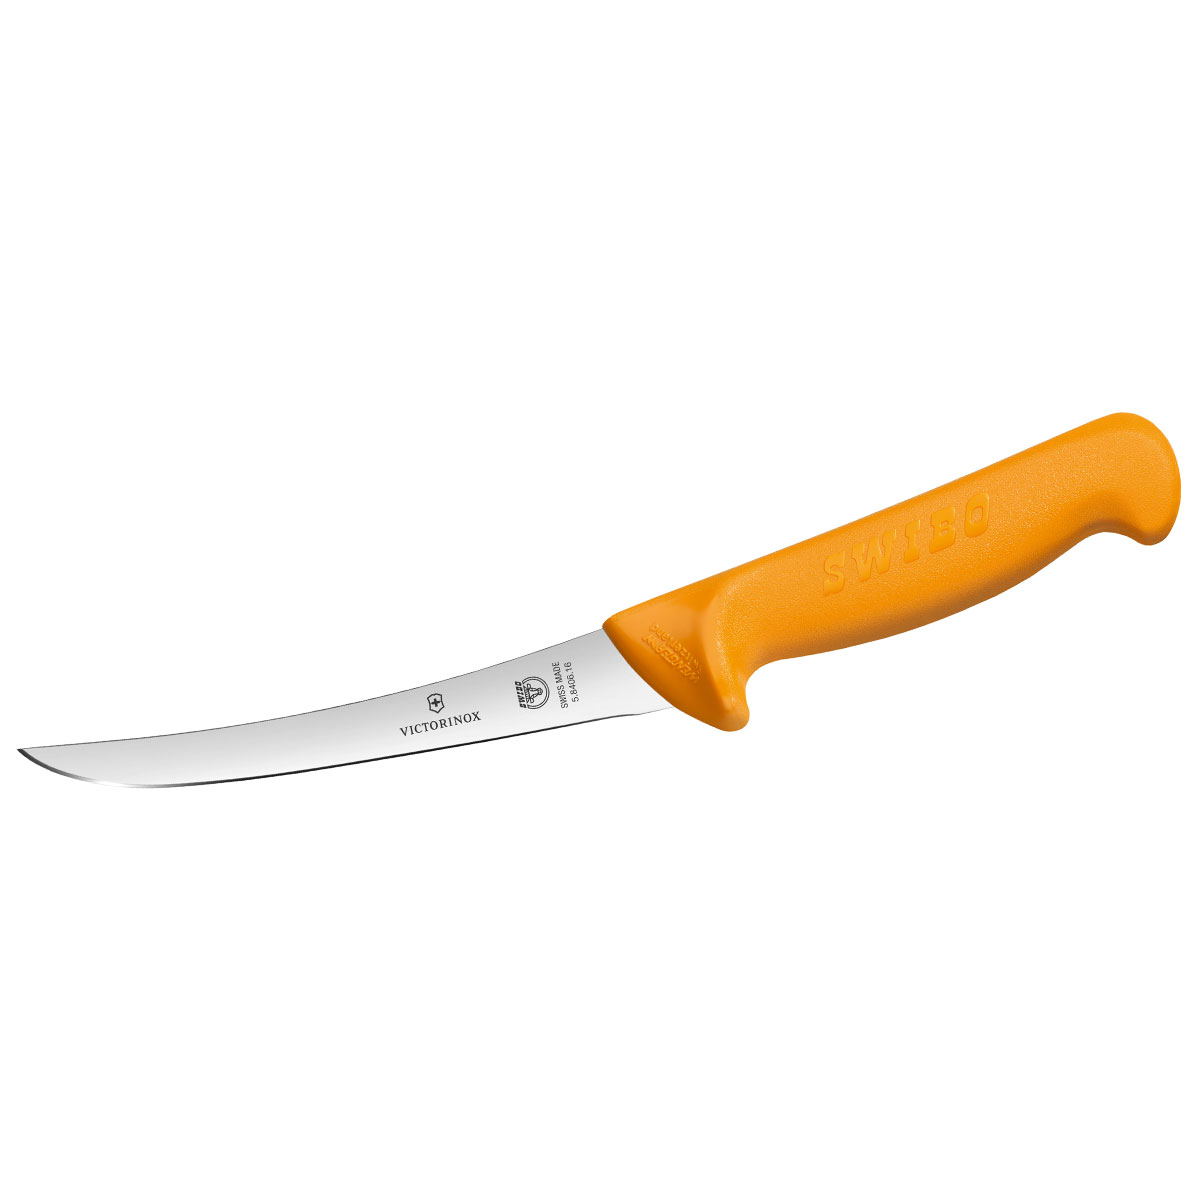 Swibo Boning Knife, 16cm (6) - Curved, Flexible (206-16)